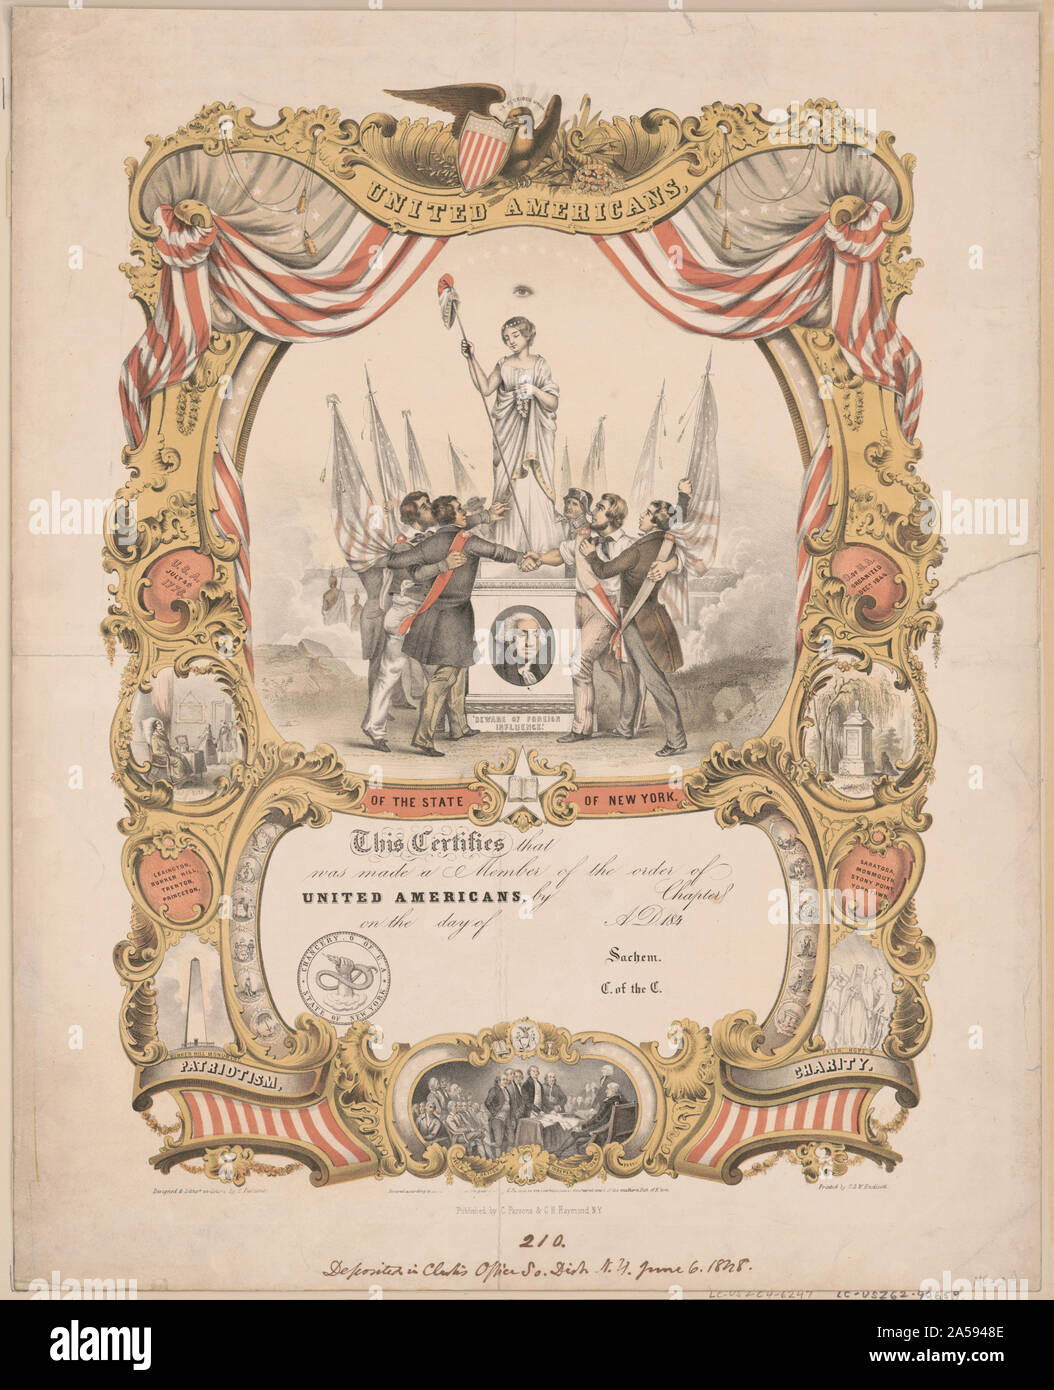 Regno americani dello stato di New York / progettato & litho'd. nei colori da C[harles] Parsons Foto Stock